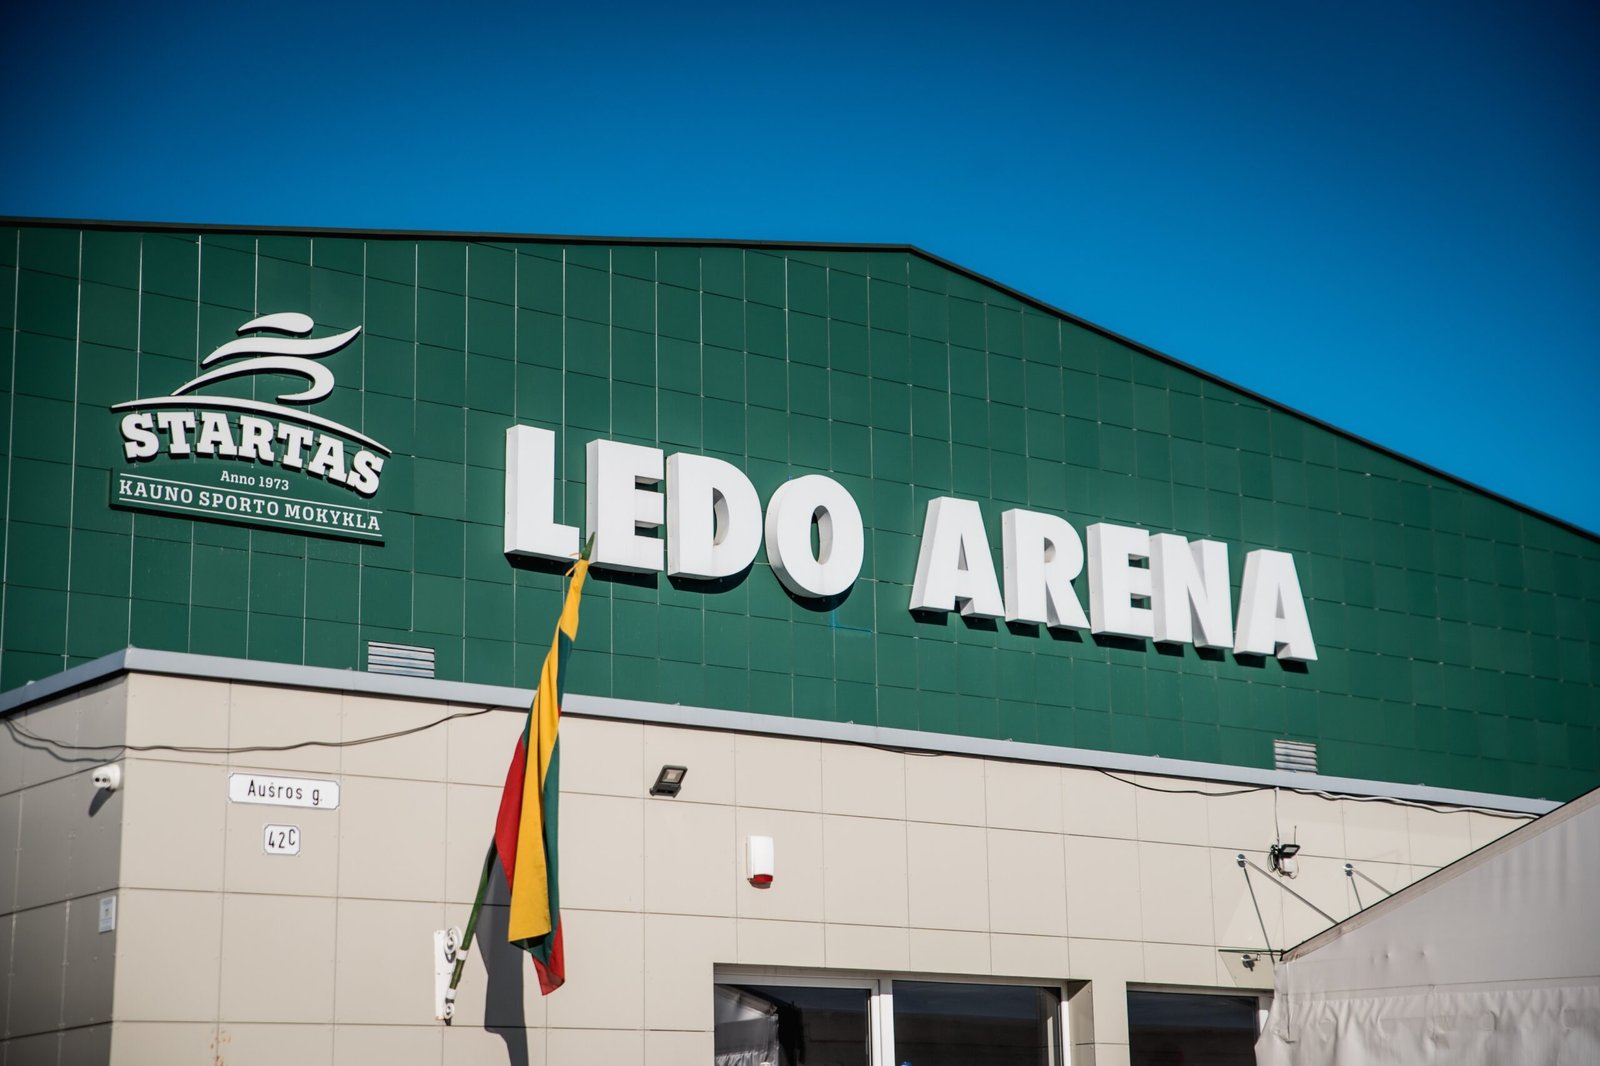 Ledo arena scaled